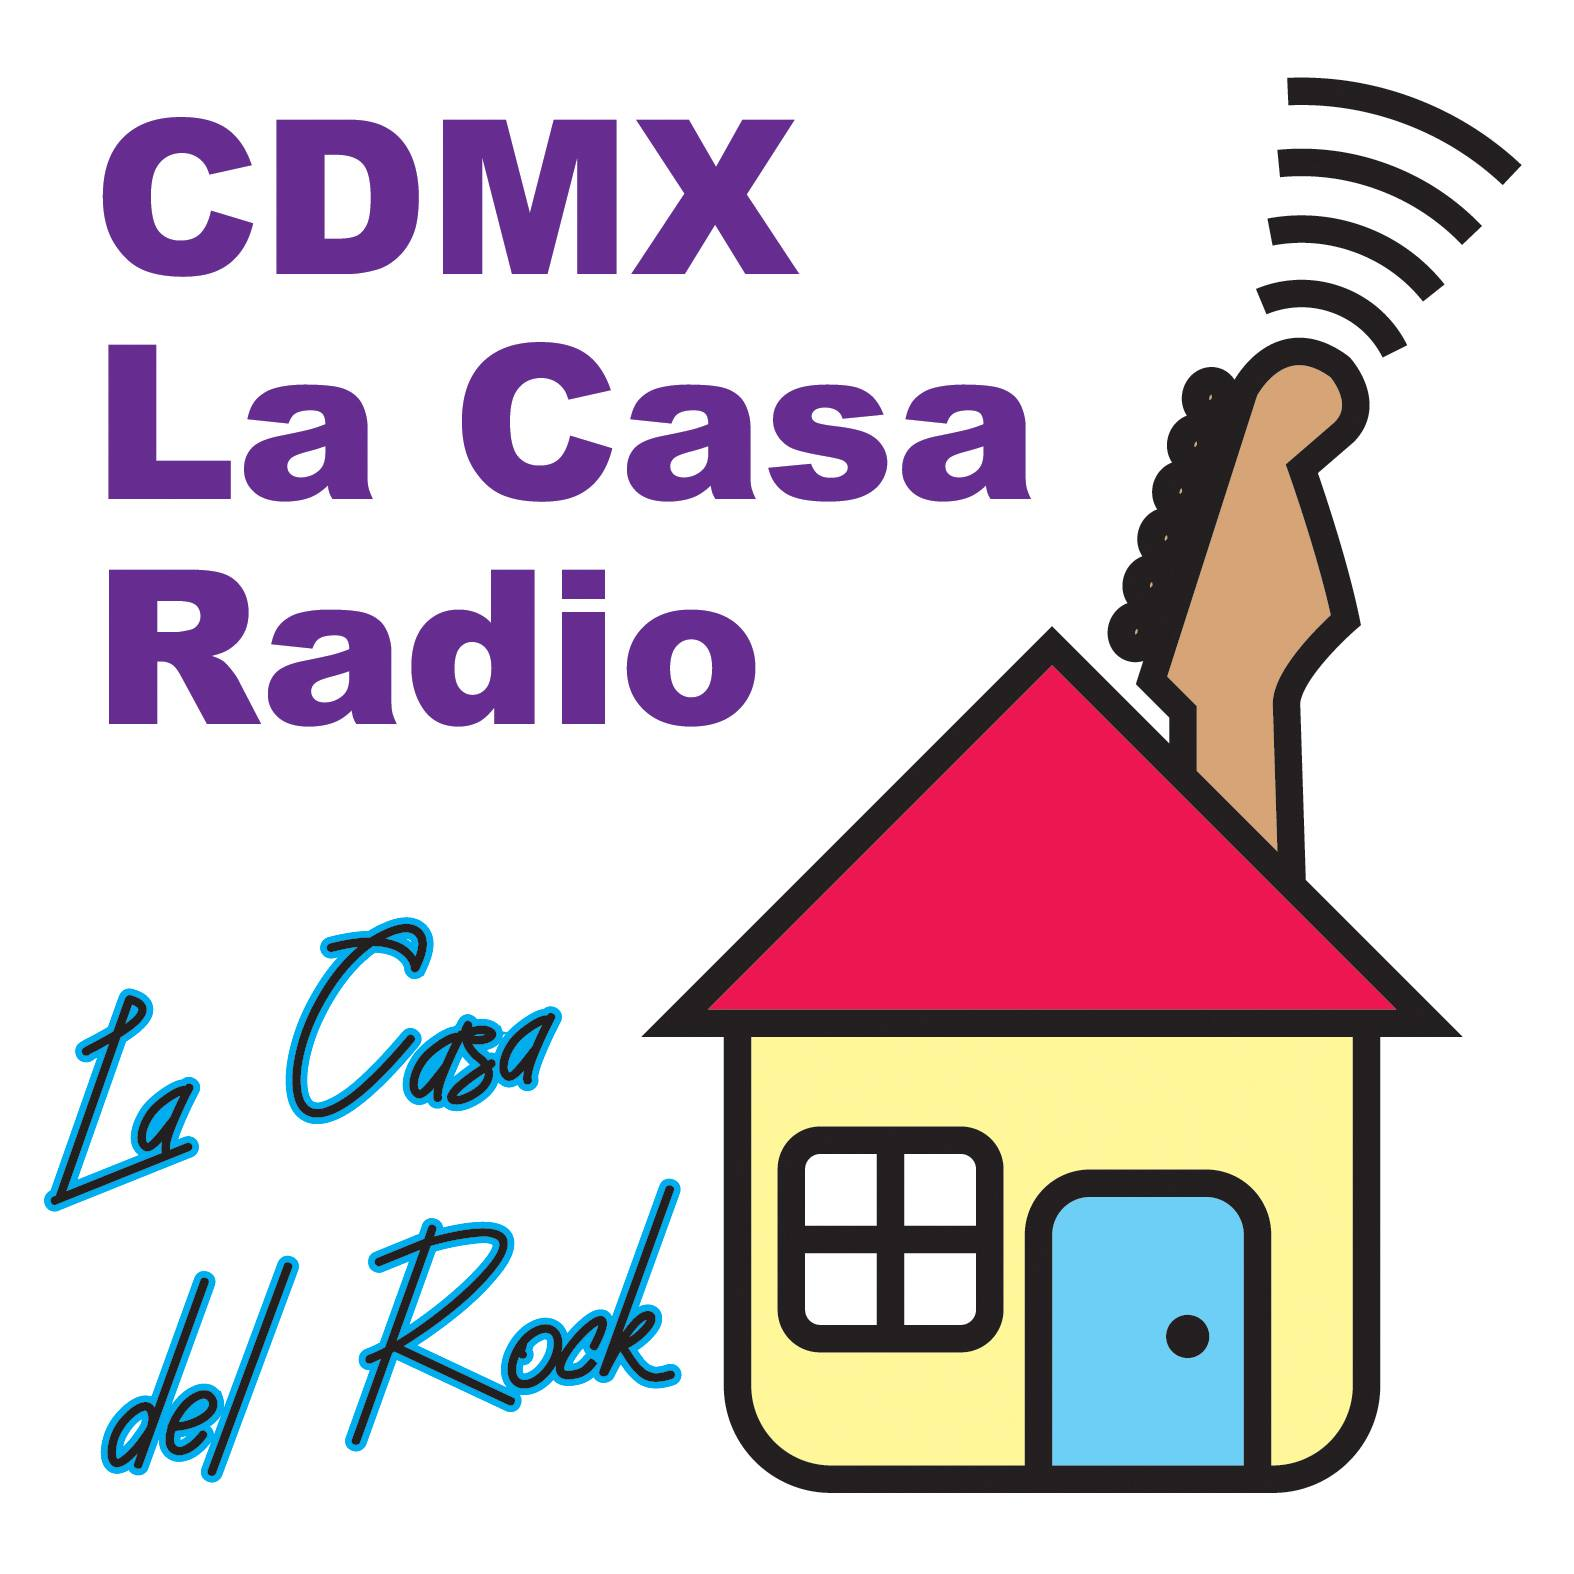 cdmx la casa radio la casa del rock